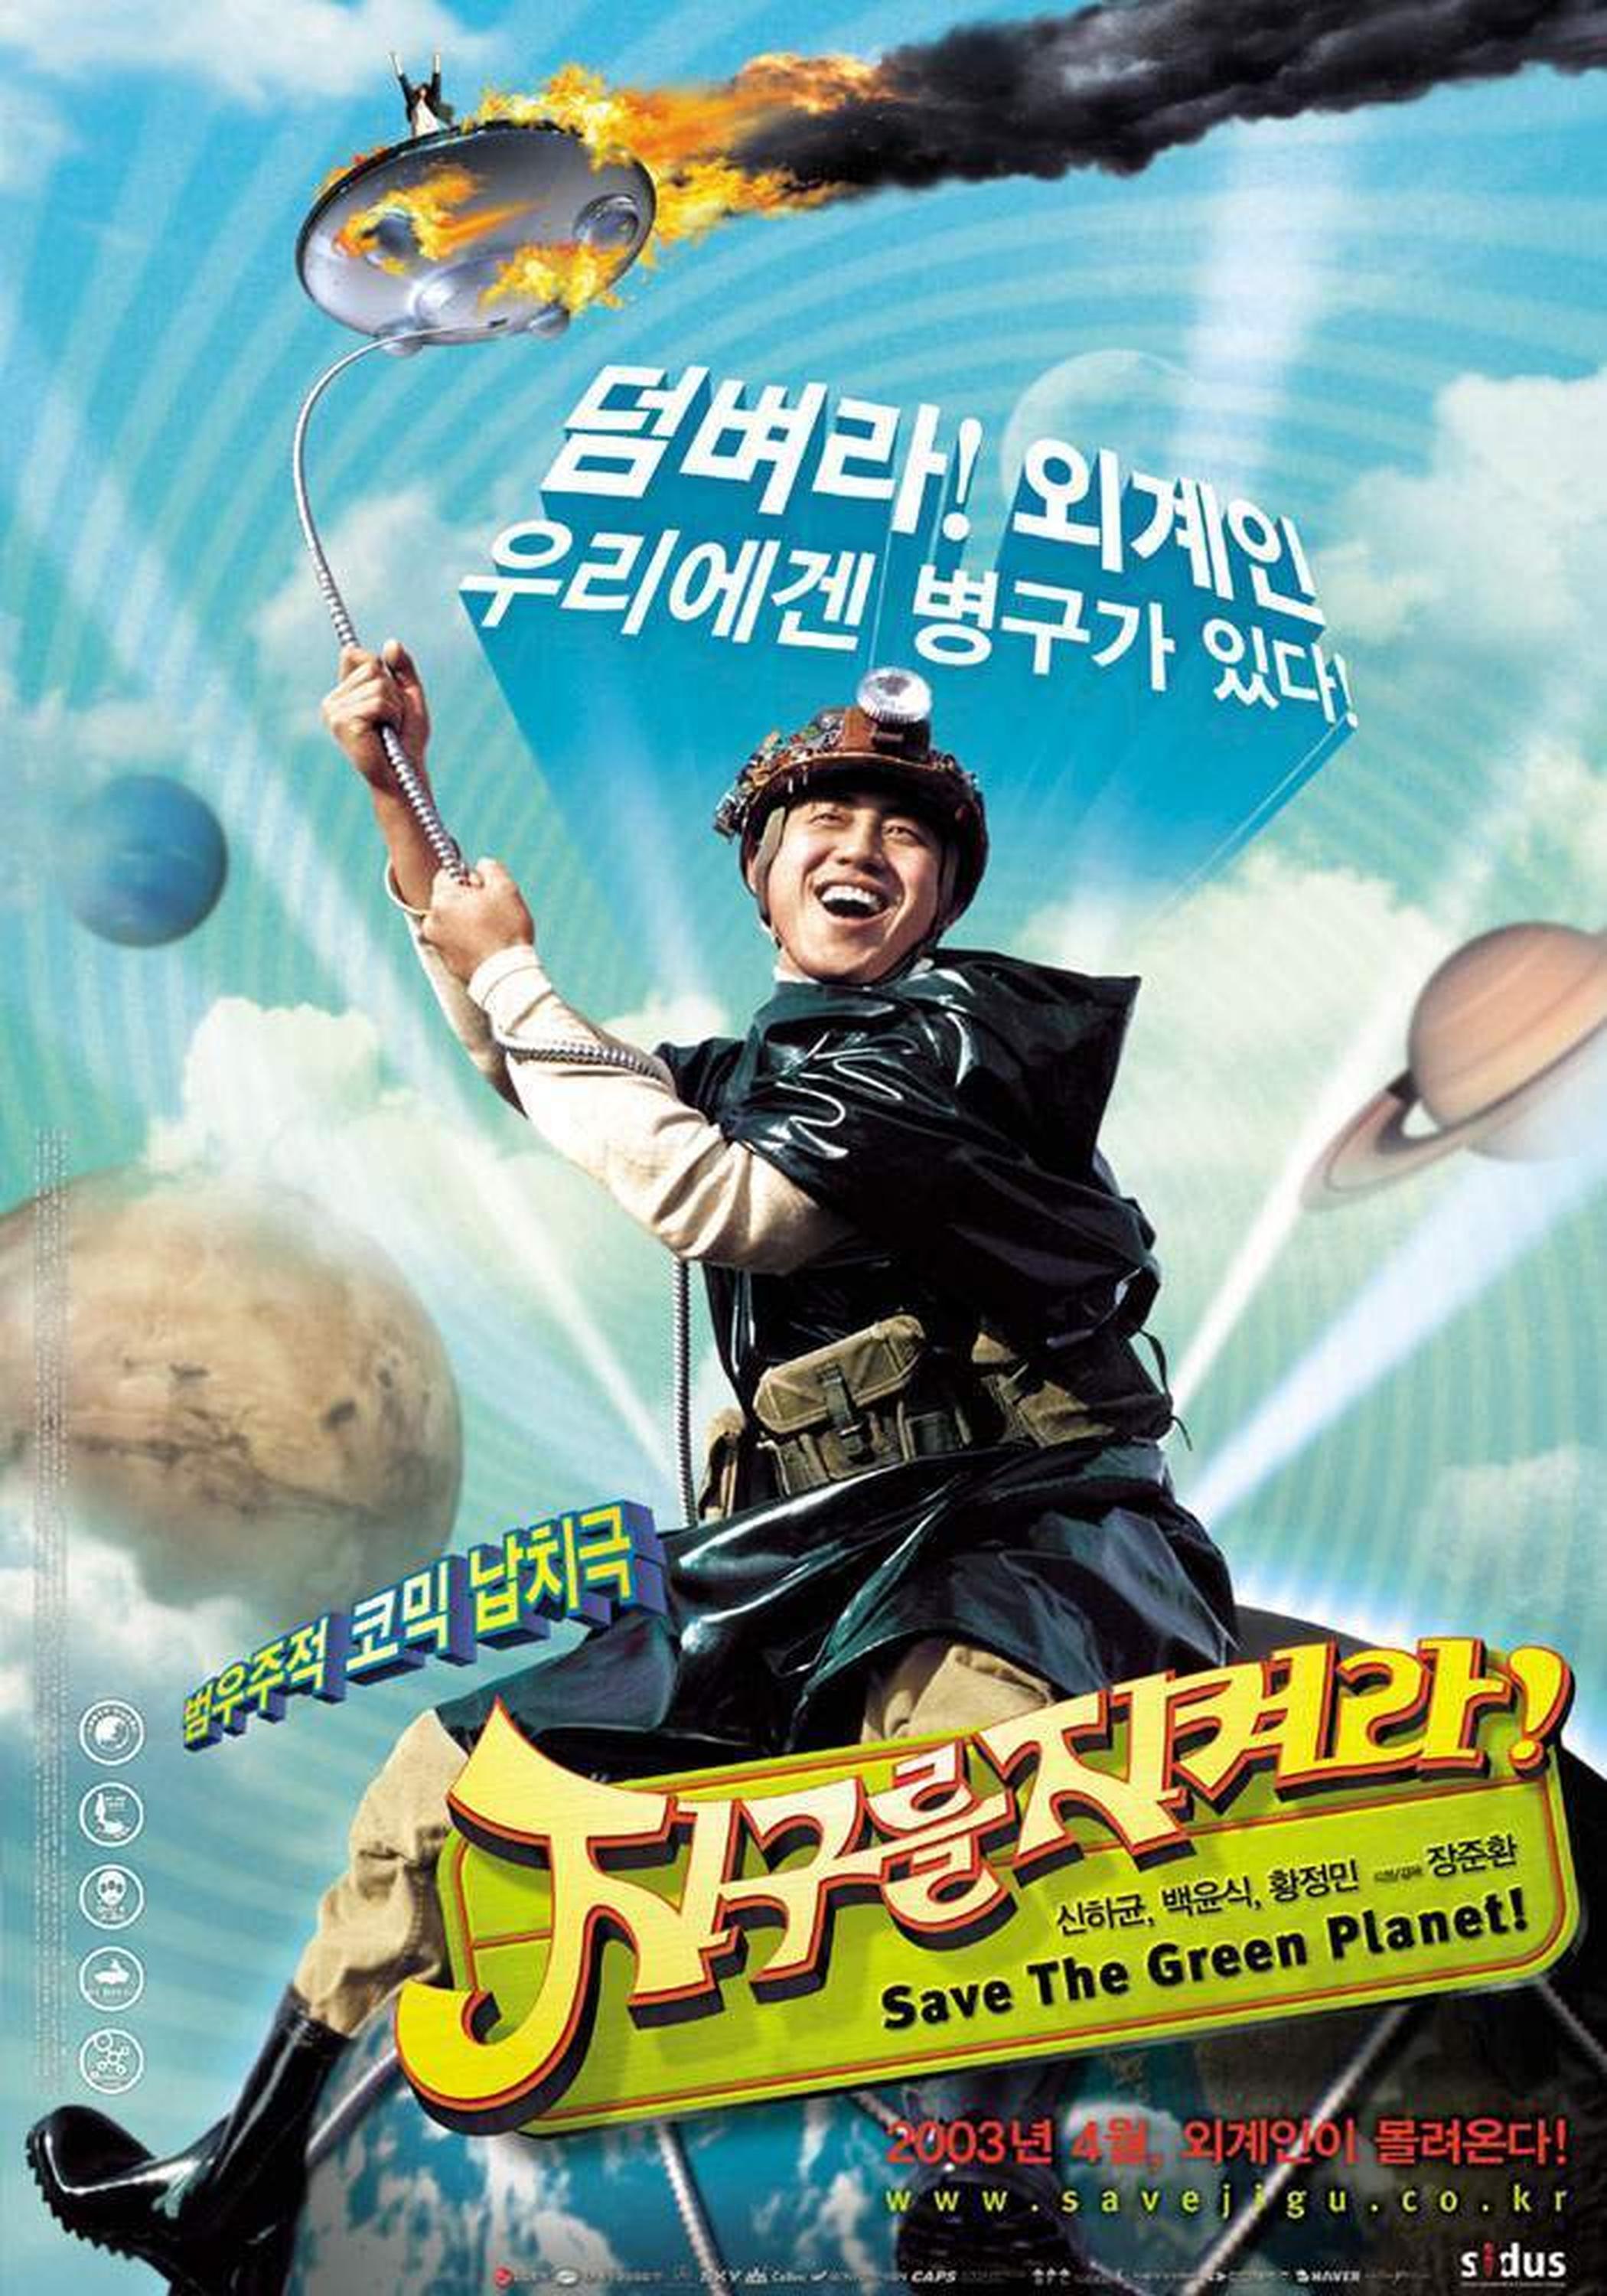 【2000-2010】《拯救绿色星球！》 (2003)导演张俊焕。韩国鲜有的科幻喜剧片。导演凭借该片获得青龙奖和大种奖的最佳新人导演奖。这部电影在当时被视作异类，现在看也依然是个异类。